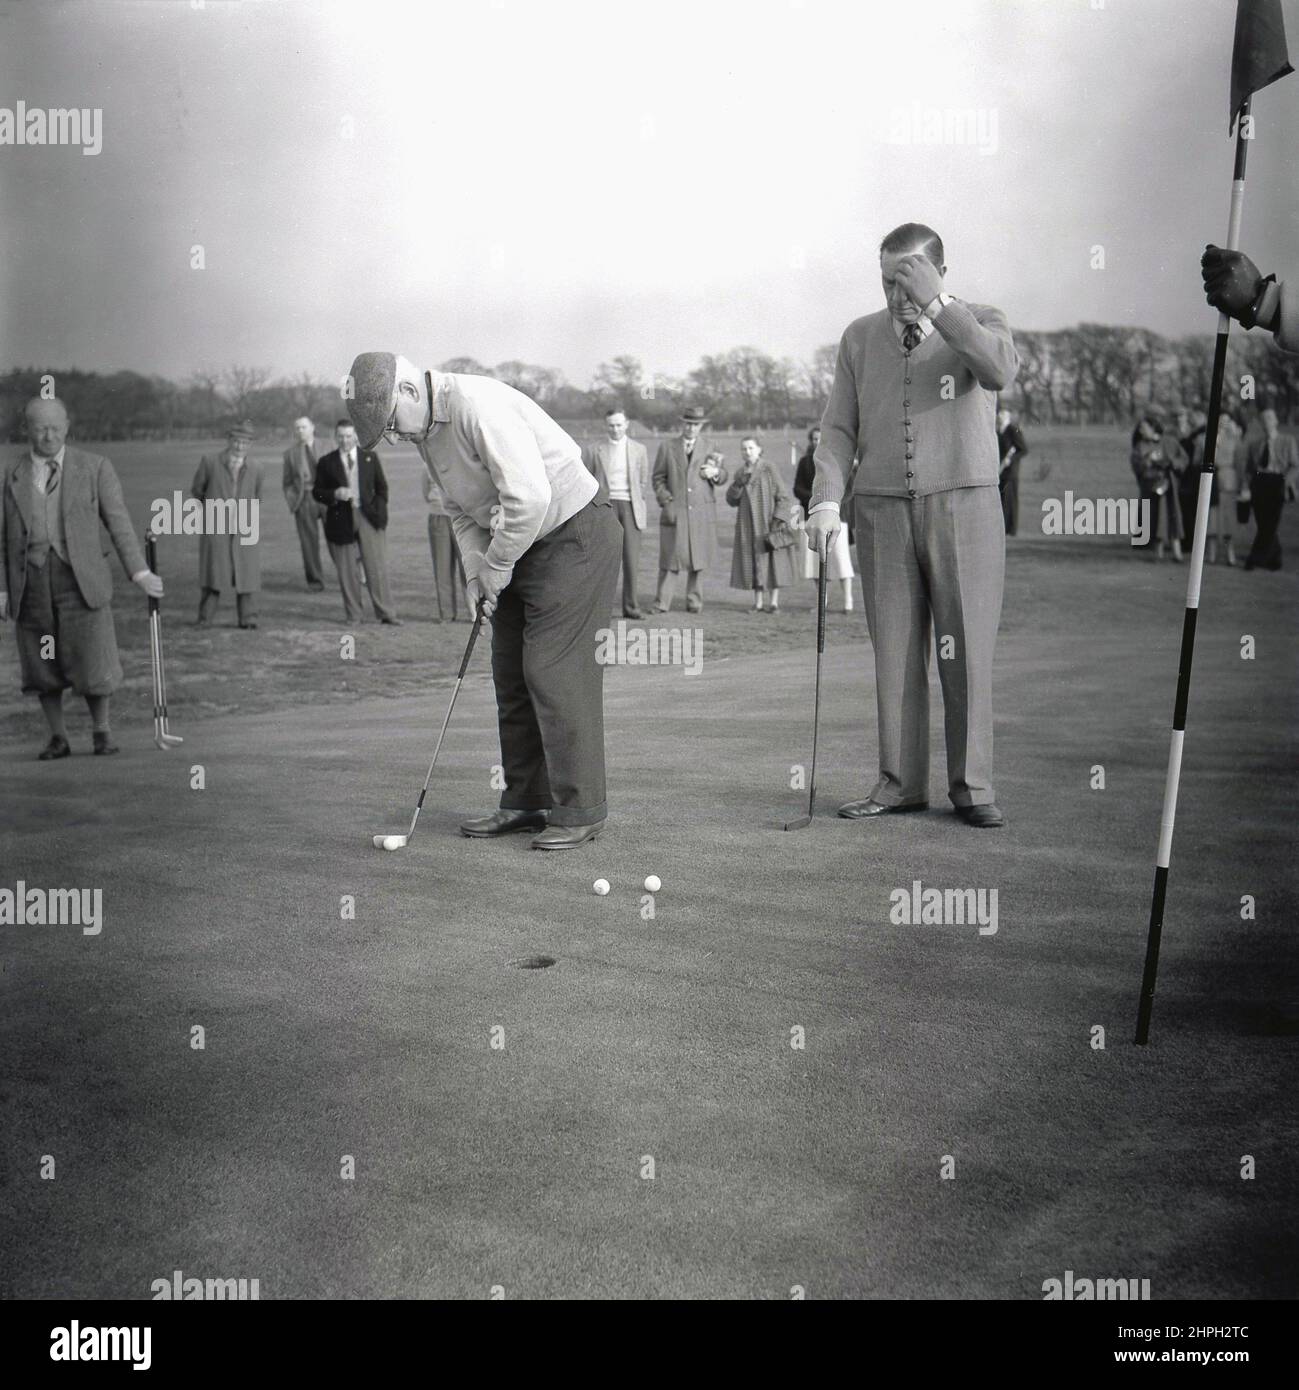 1950s, histórico, jugando en un día de golf de la compañía, dos golfistas masculinos en un verde del puttin, uno a punto de poner su bola hacia el agujero, Puerto Talbot, Gales, Reino Unido. Foto de stock